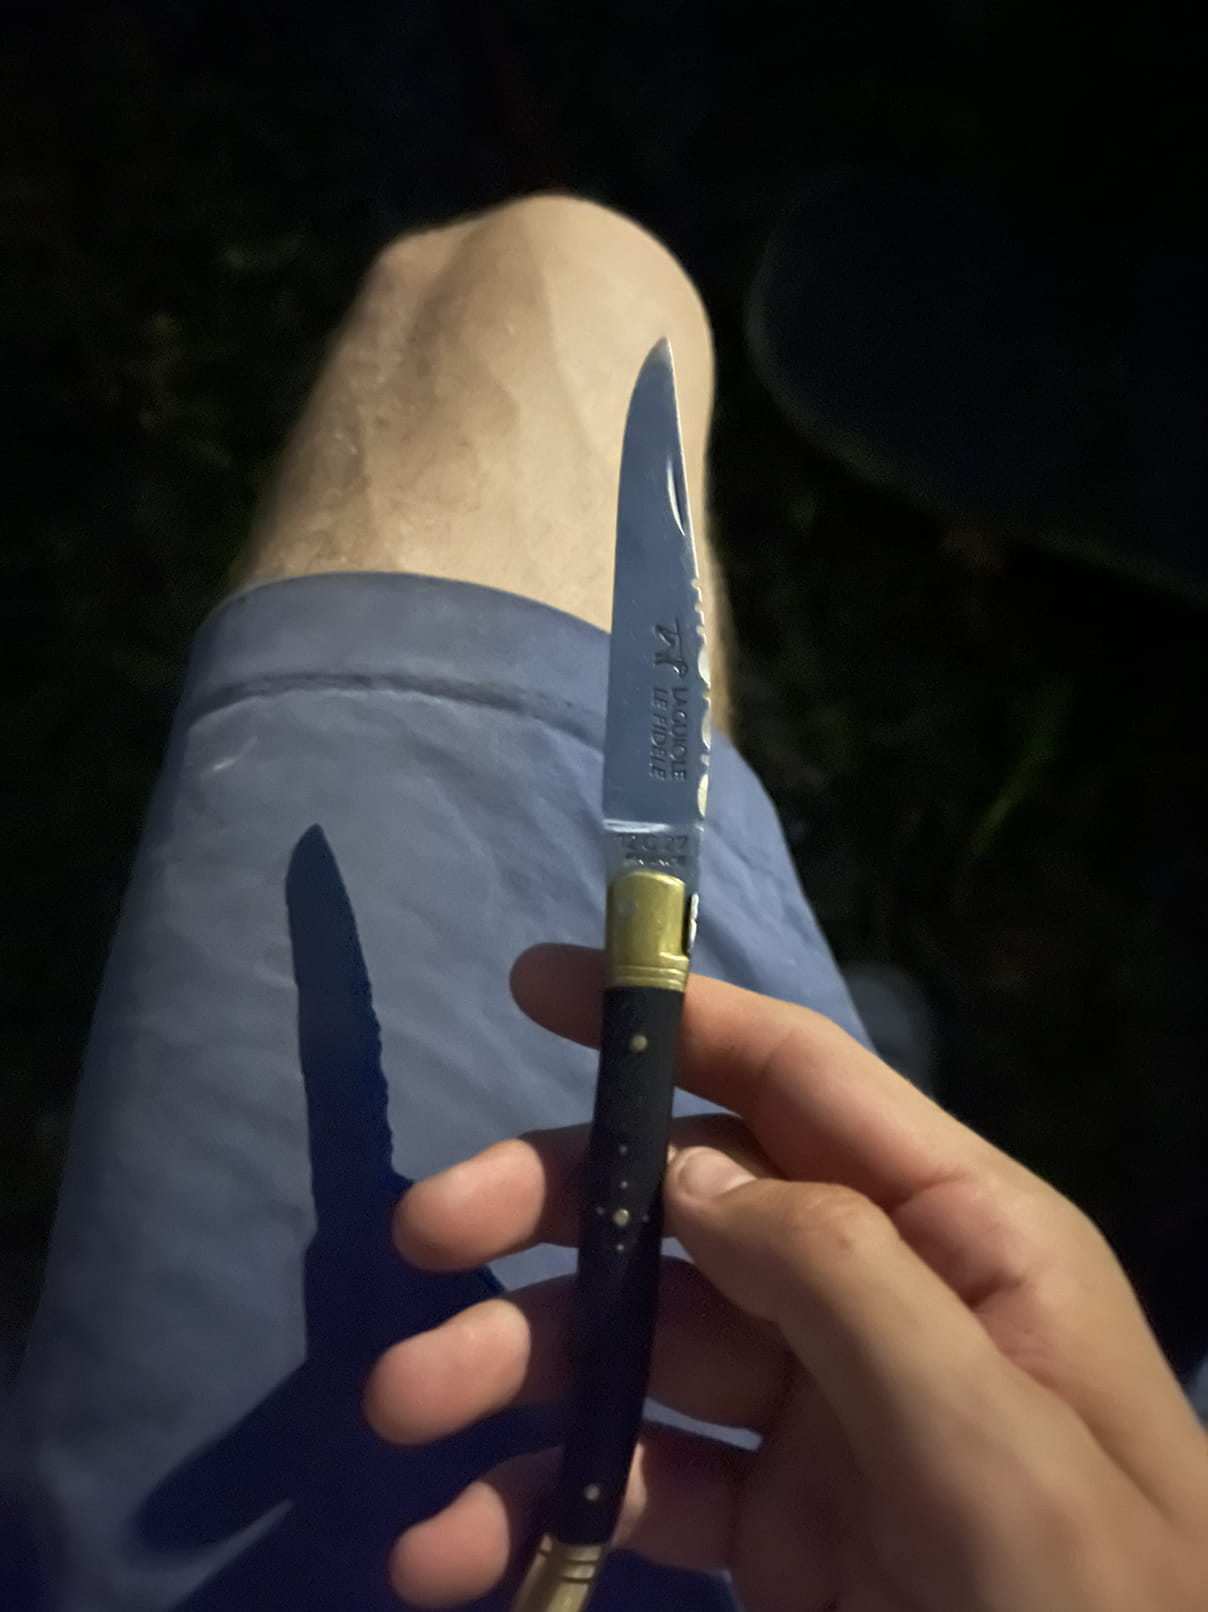 Garretts knife